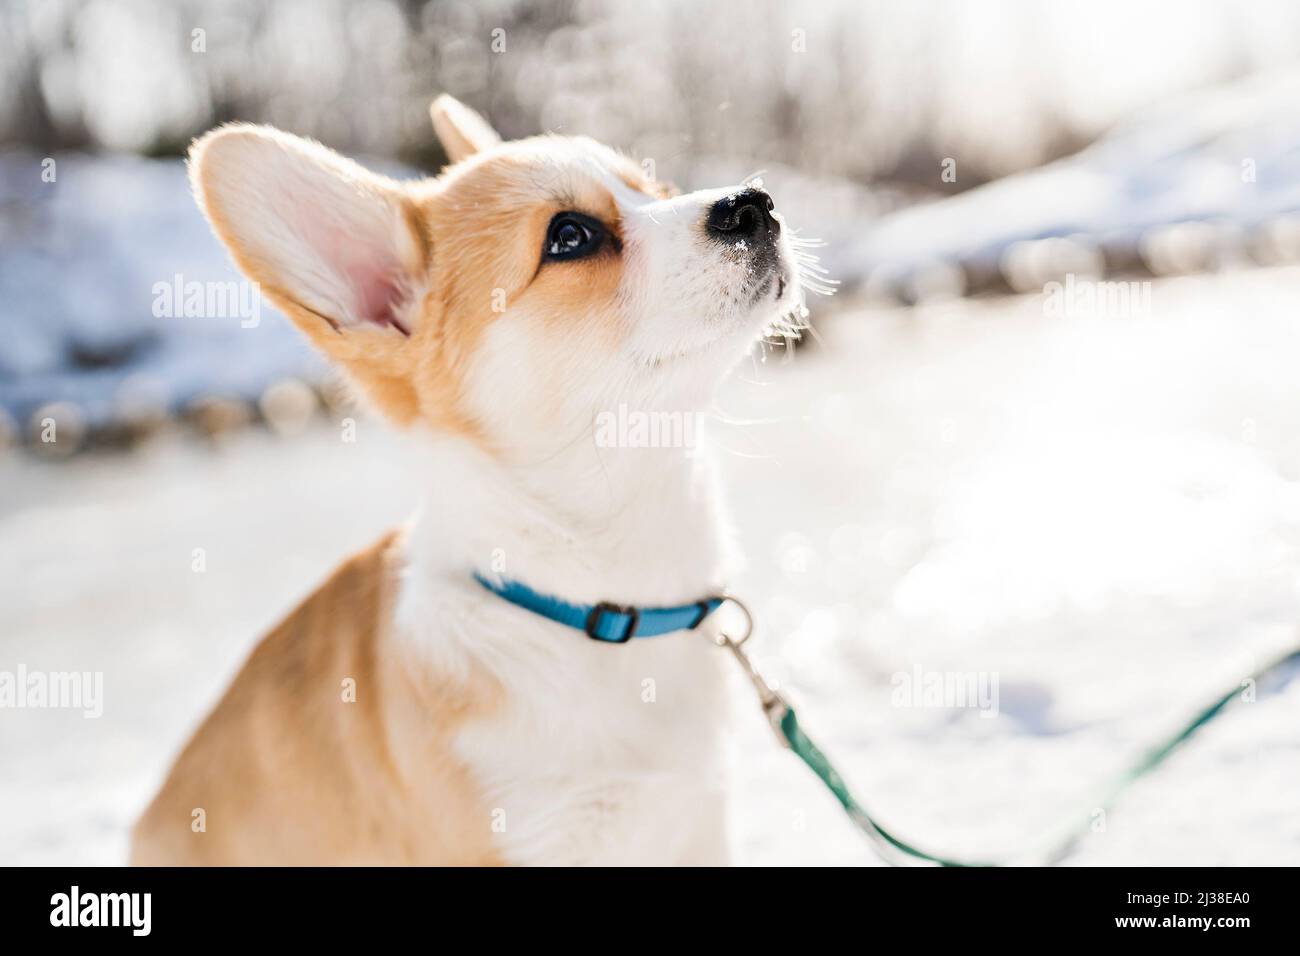 cane corgi sulla neve nel paesaggio invernale Foto Stock